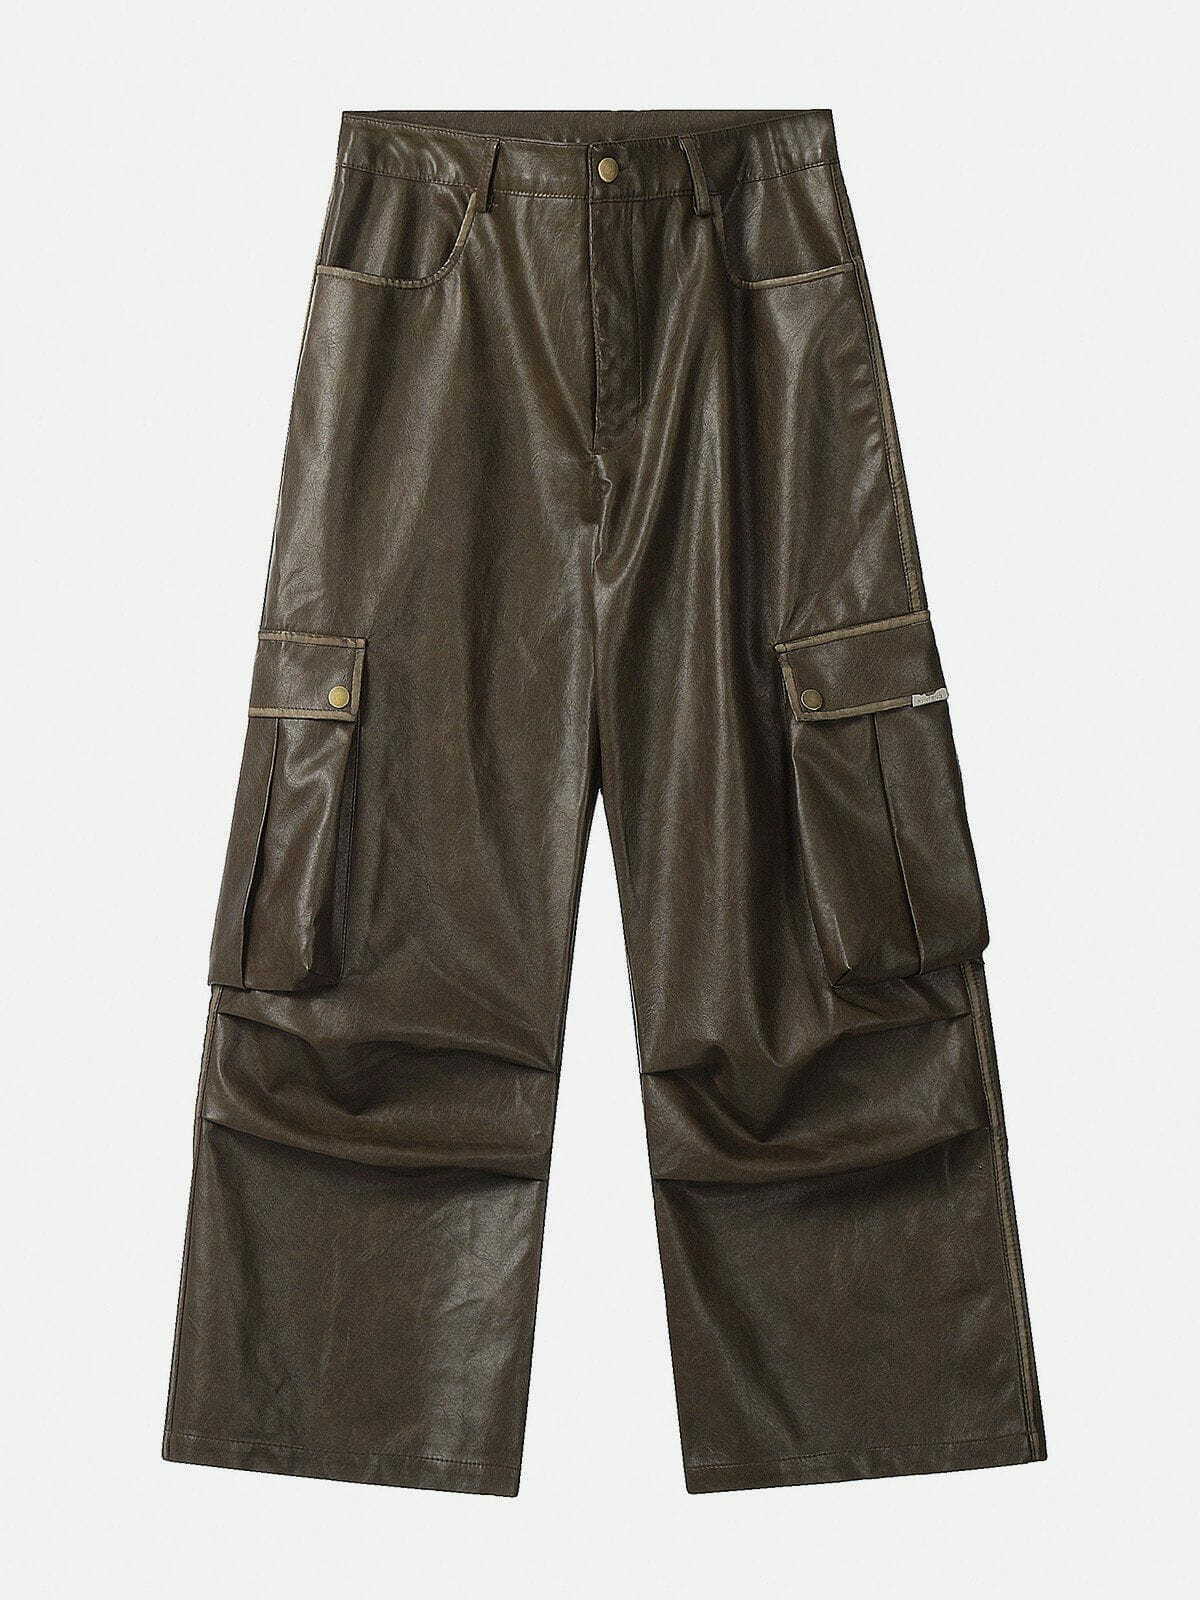 edgy big pocket pu cargo pants   sleek urban streetwear 7575